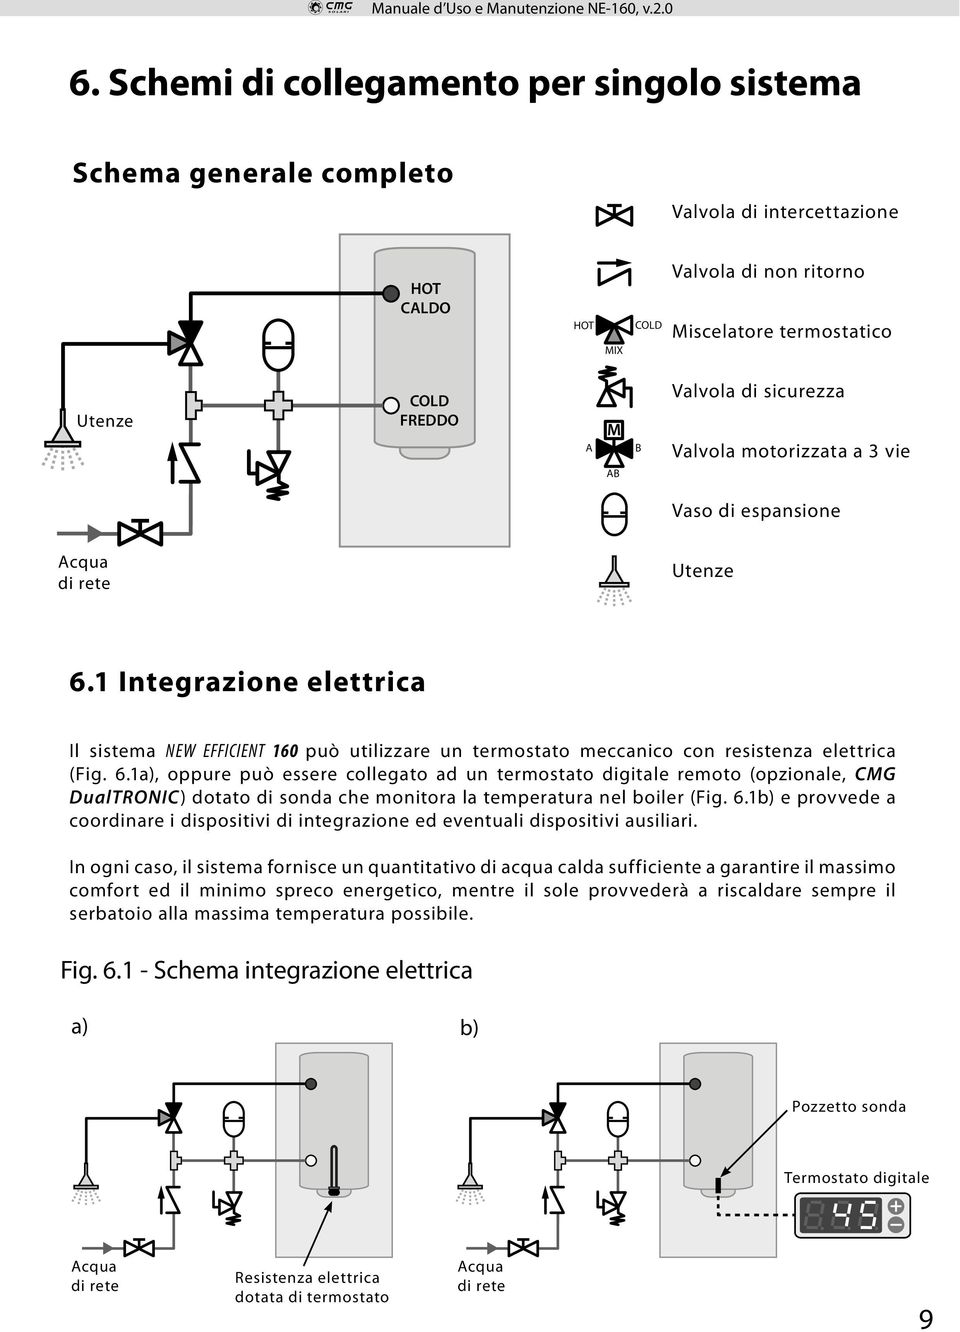 1 Integrazione elettrica Il sistema NEW EFFICIENT 160 può utilizzare un termostato meccanico con resistenza elettrica (Fig. 6.